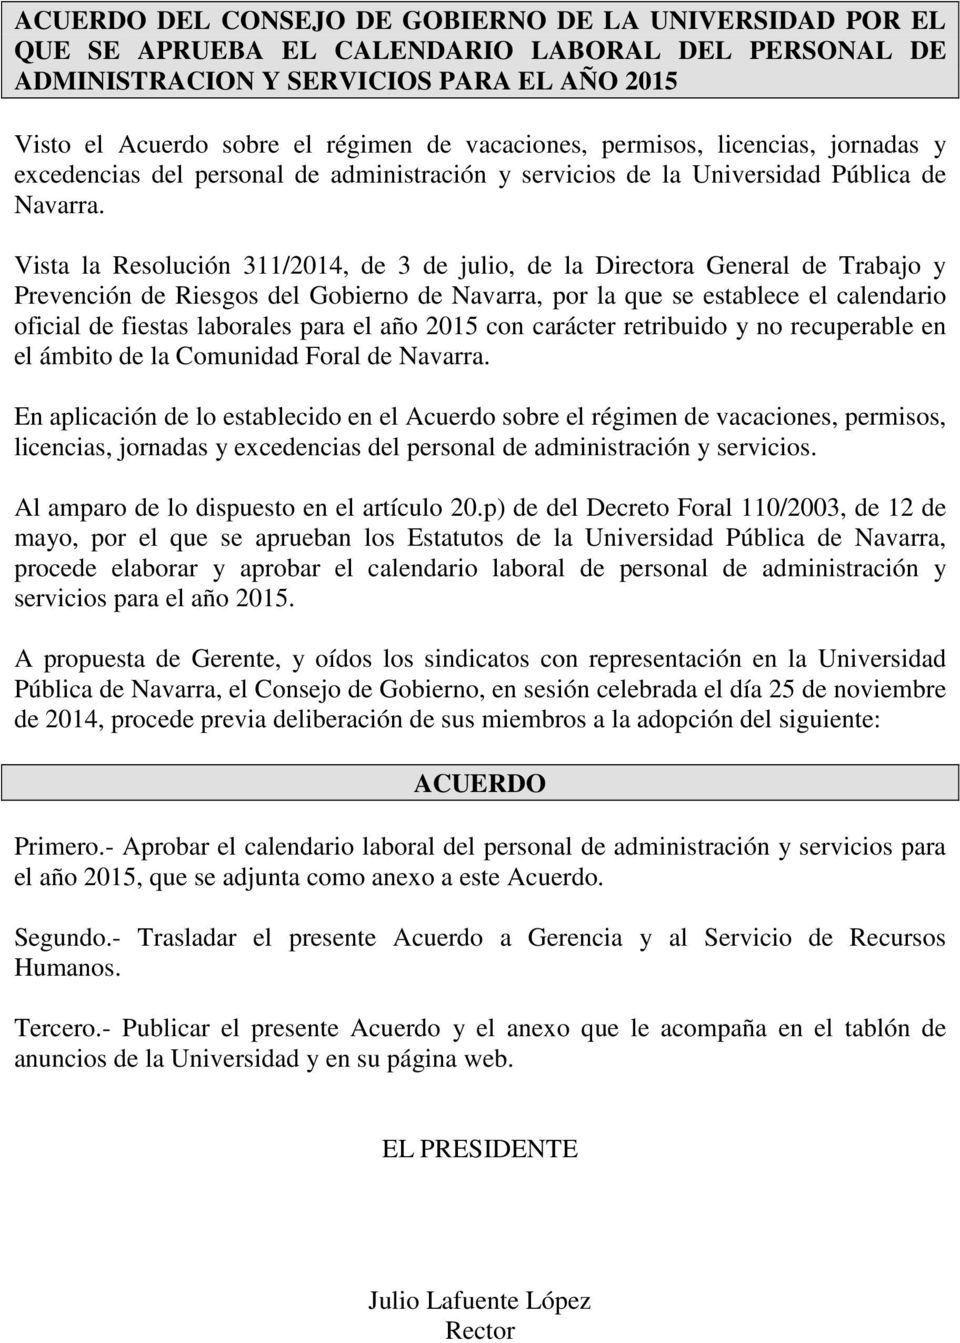 Vista la Resolución 311/2014, de 3 de julio, de la Directora General de Trabajo y Prevención de Riesgos del Gobierno de Navarra, por la que se establece el calendario oficial de fiestas laborales